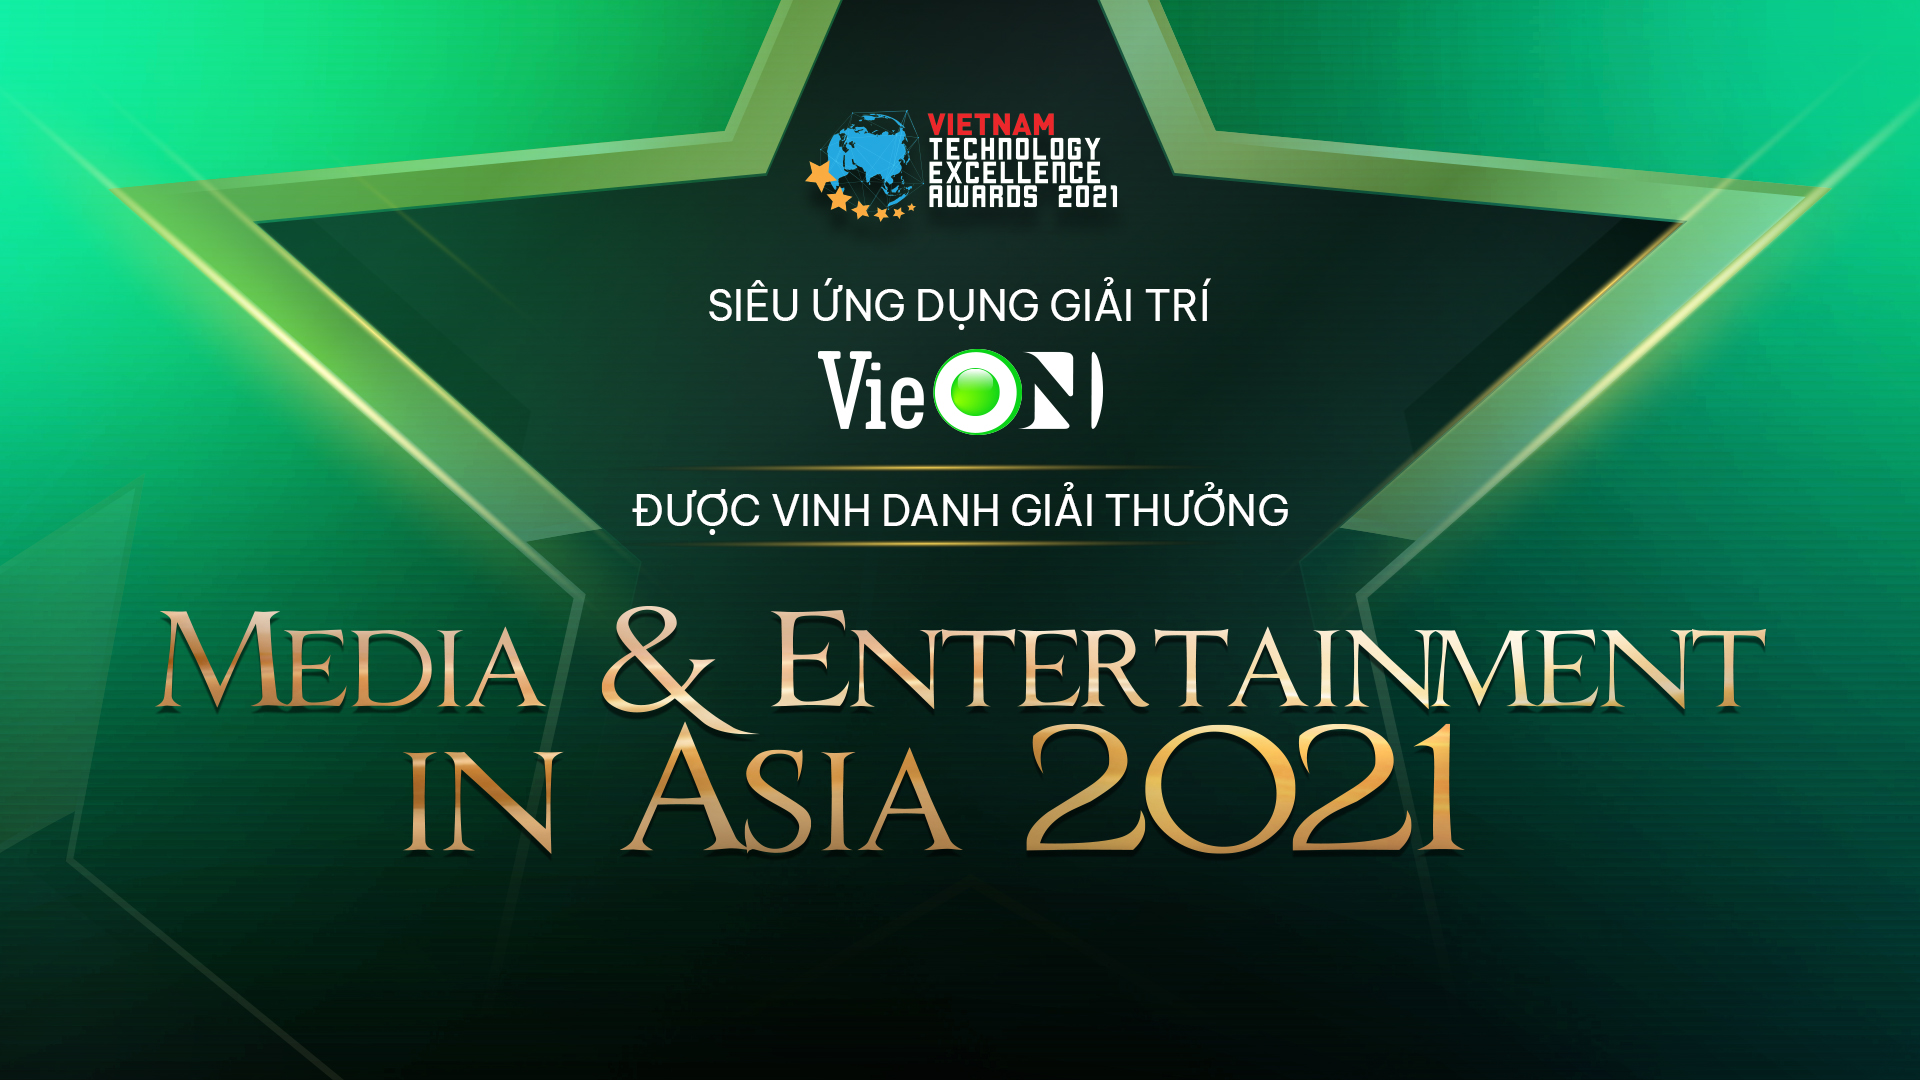 VieON được vinh danh giải thưởng “Truyền thông & Giải trí Châu Á 2021”